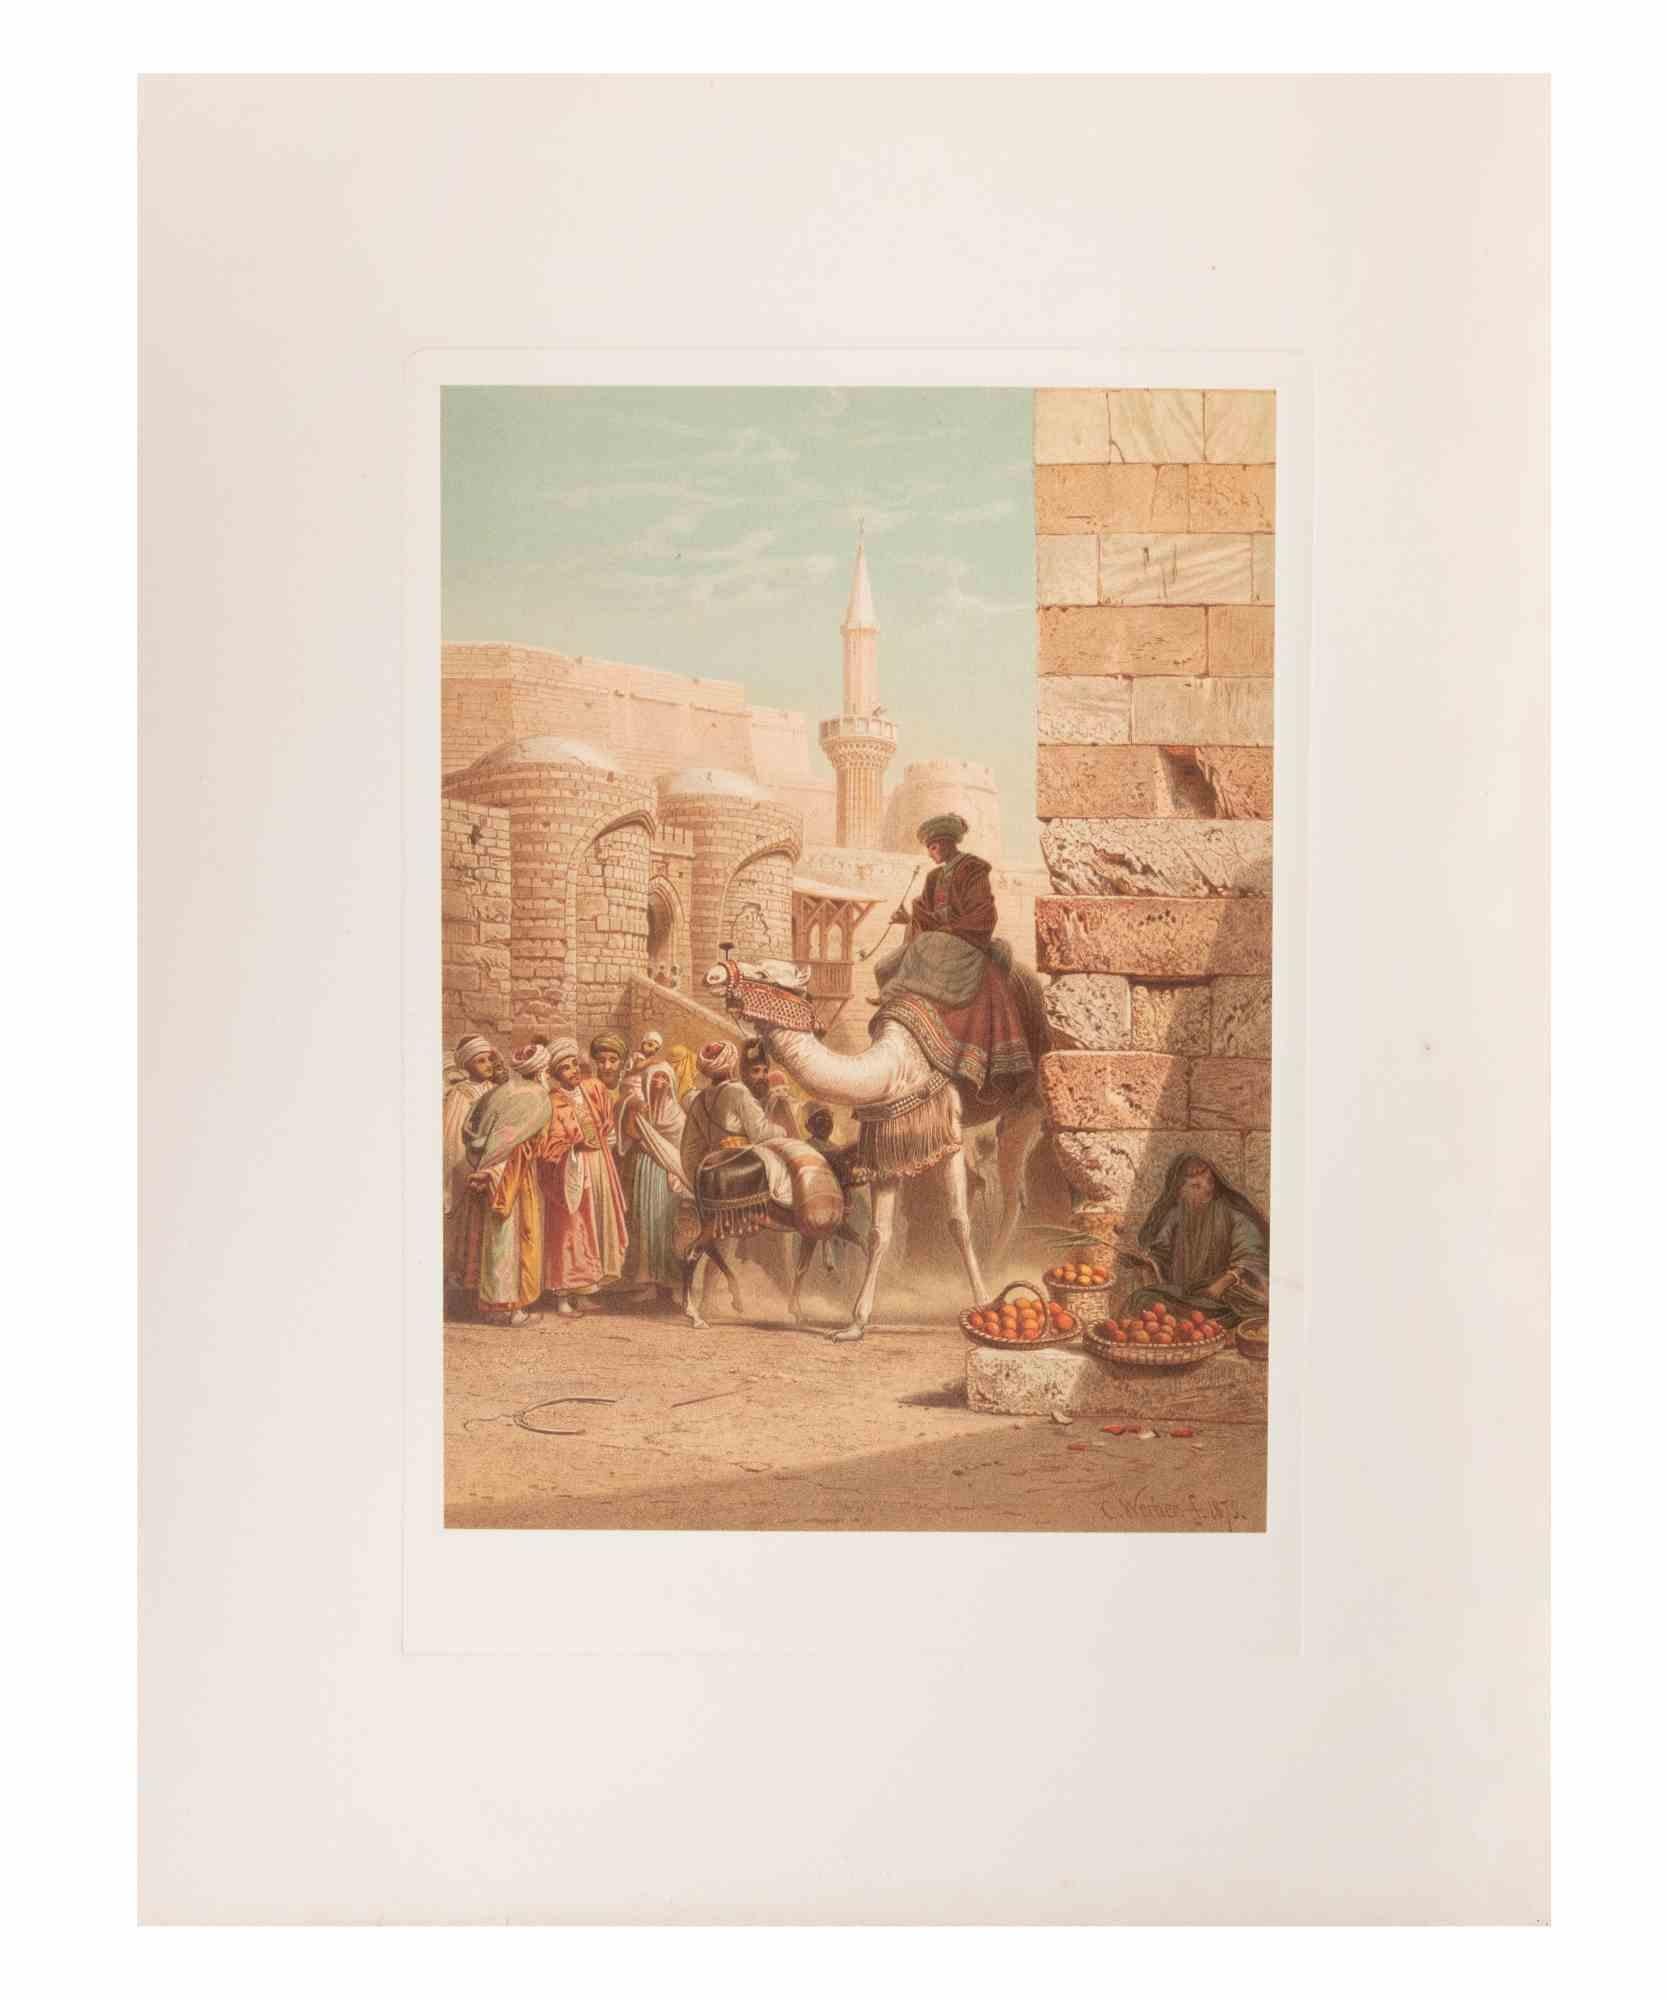 Ägypter auf Kamel ist ein modernes Kunstwerk, das d'apres Karl Werner realisiert wurde.

Gemischtfarbige Chromolithographie. 

Das Werk ist den Aquarellen nachempfunden, die der Künstler während einer Reise nach Ägypten zwischen 1862 und 1865